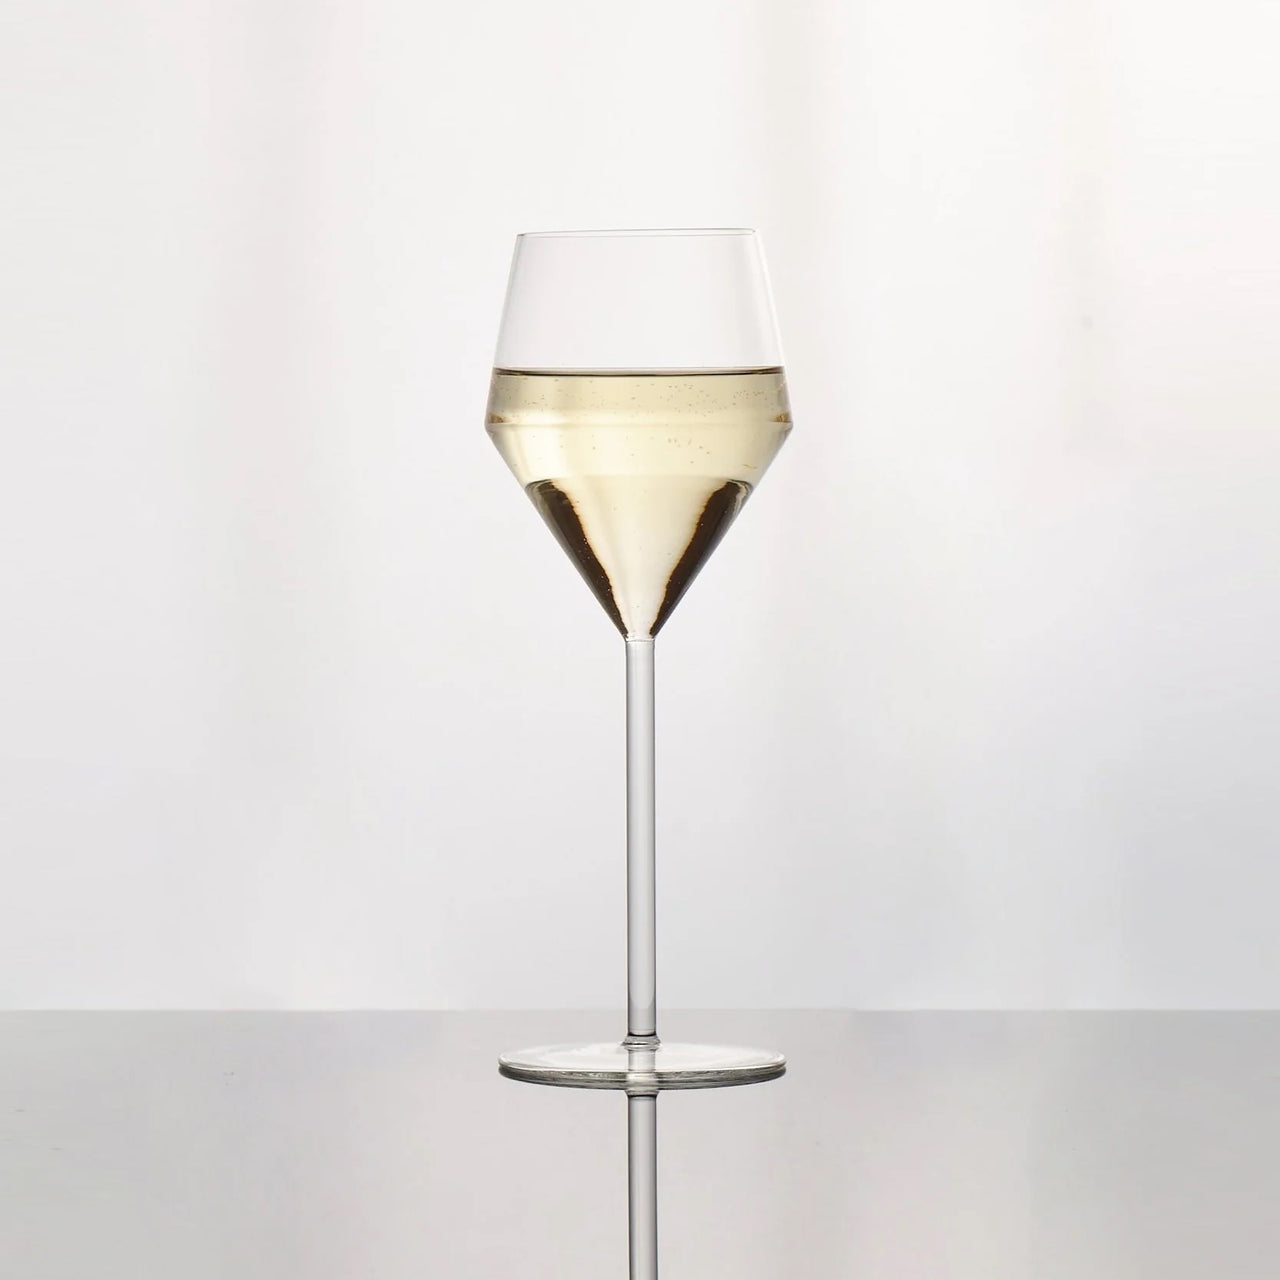 Aaron Probyn Juniper Wine Glasses, Set of 2 on Food52